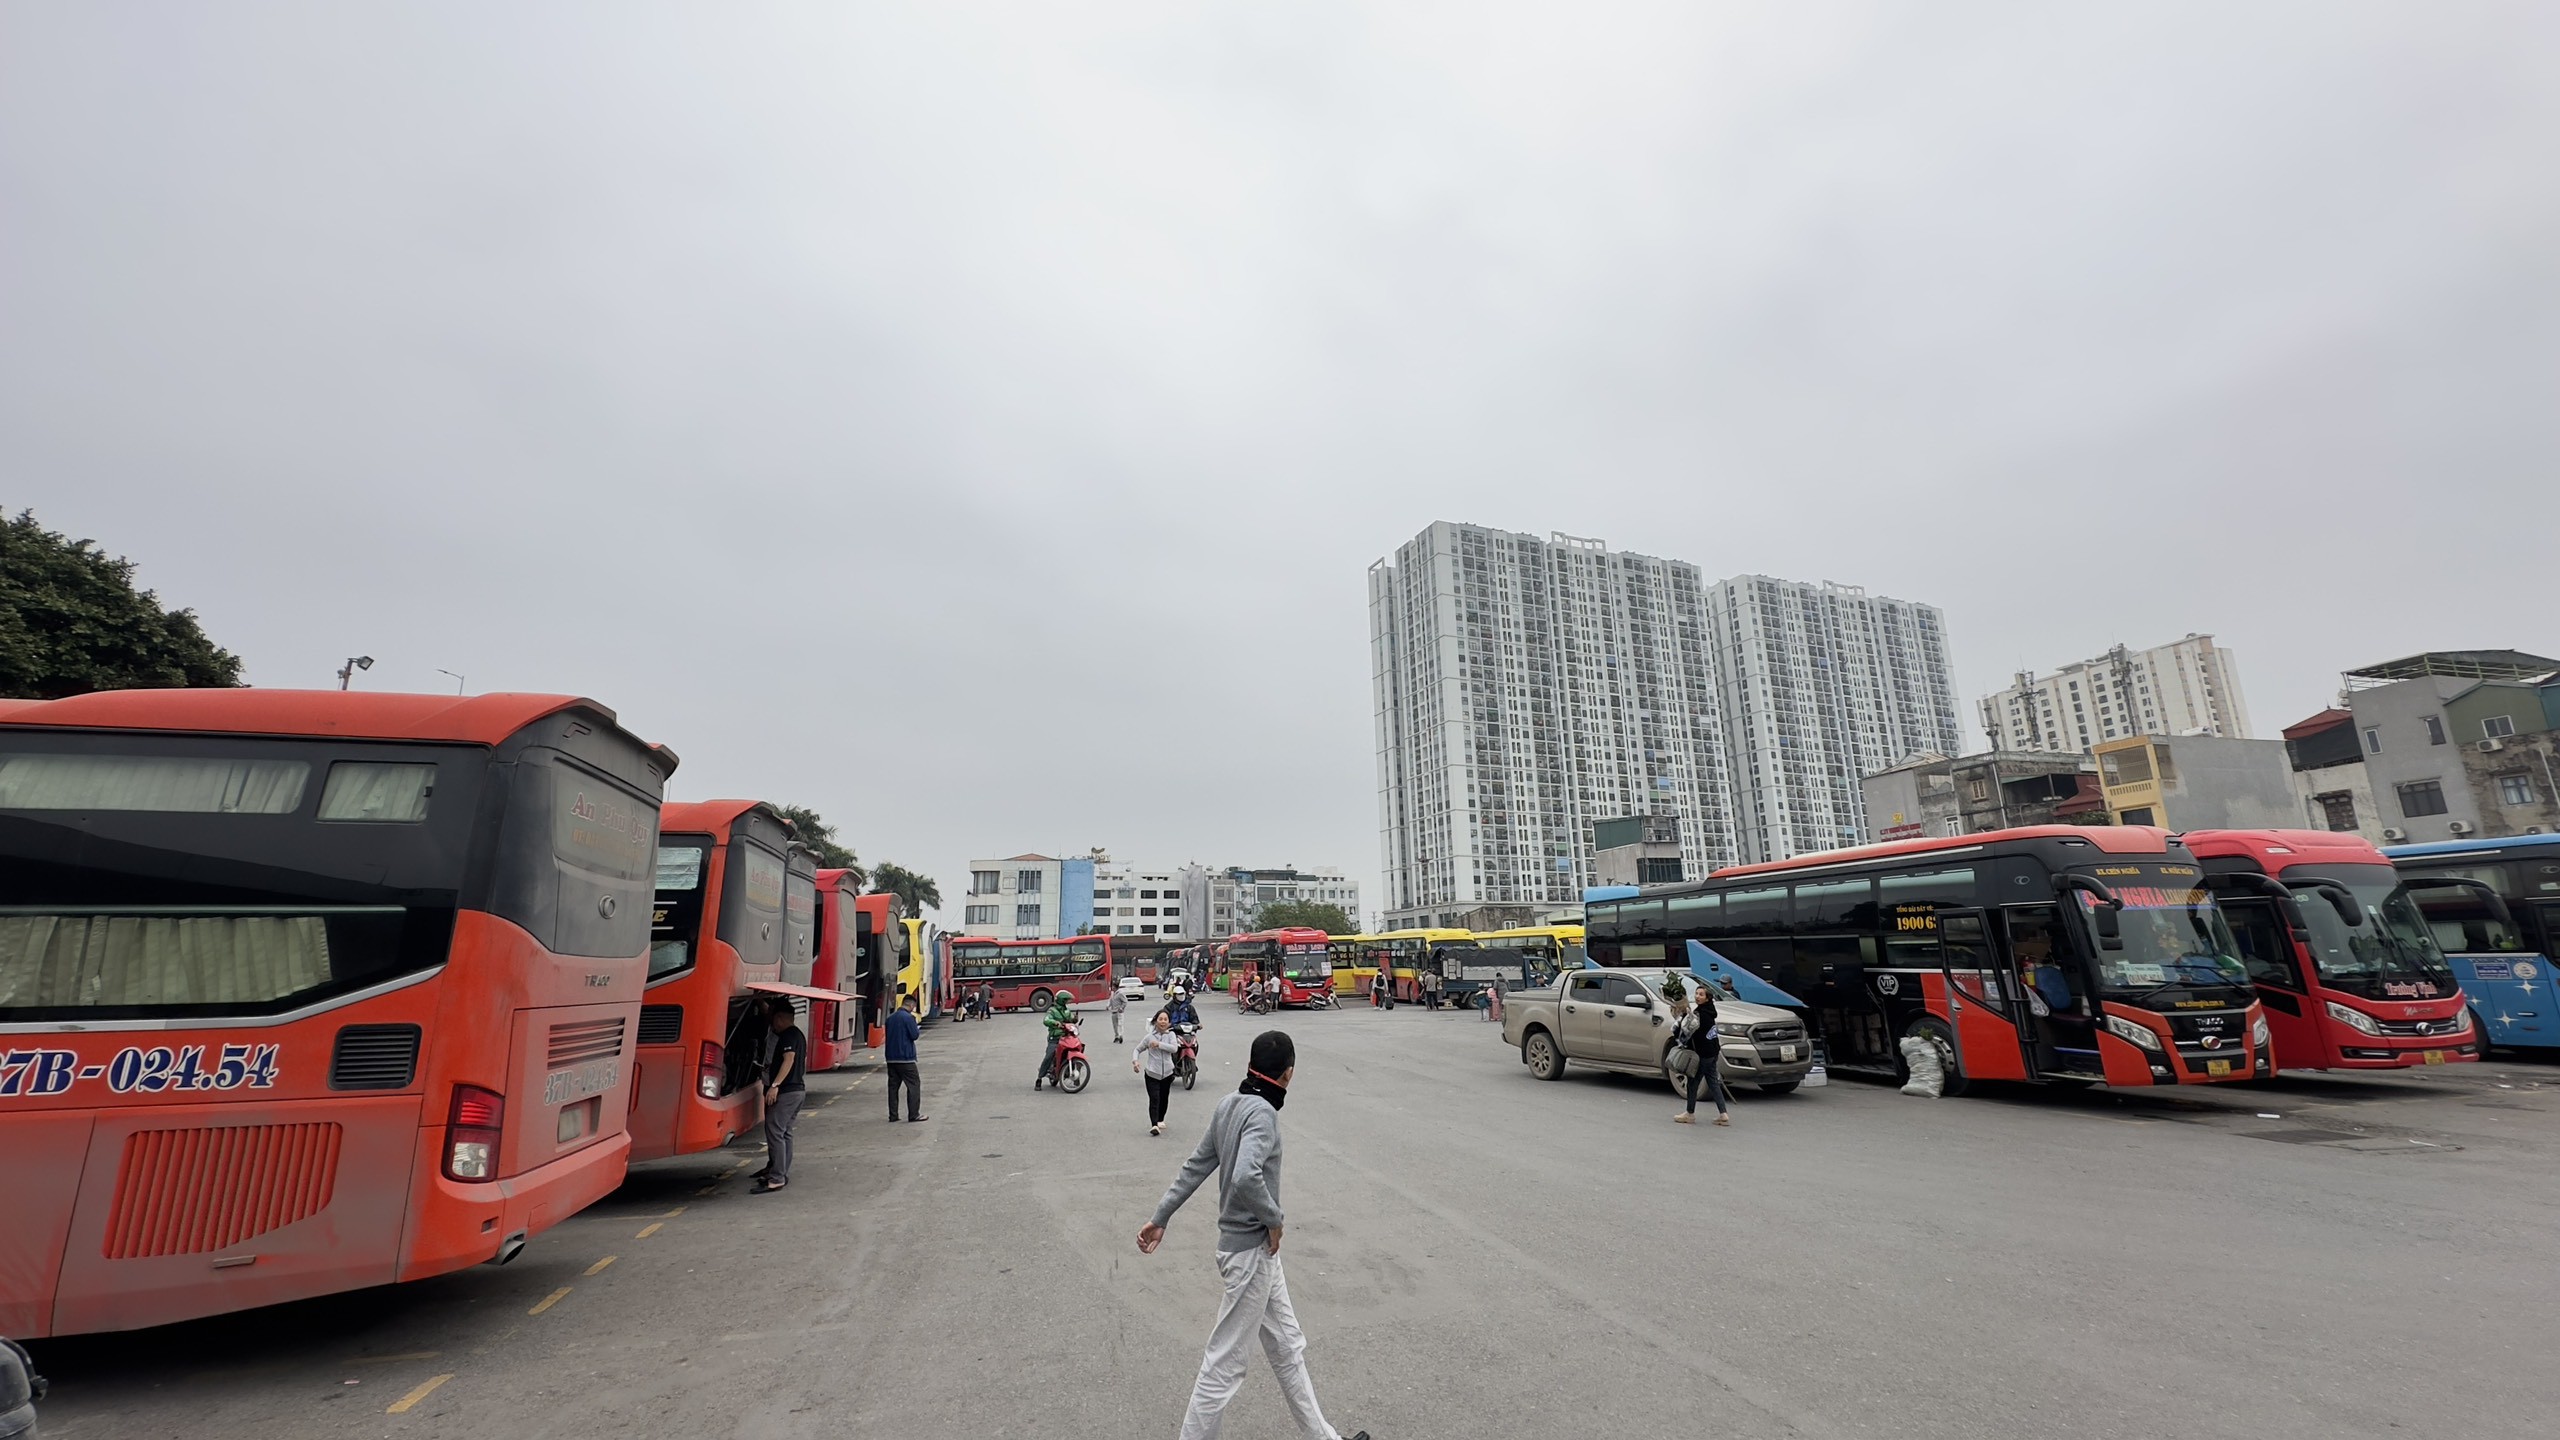 Bến xe Nước Ngầm nằm ở phía Nam trung tâm TP.Hà Nội. Bến xe là điểm đón, trả hành khách của xe chạy các tuyến Hà Nội đi các tỉnh miền Trung như Thanh Hóa, Nghệ An, Hà Tĩnh và các tỉnh phía Nam.